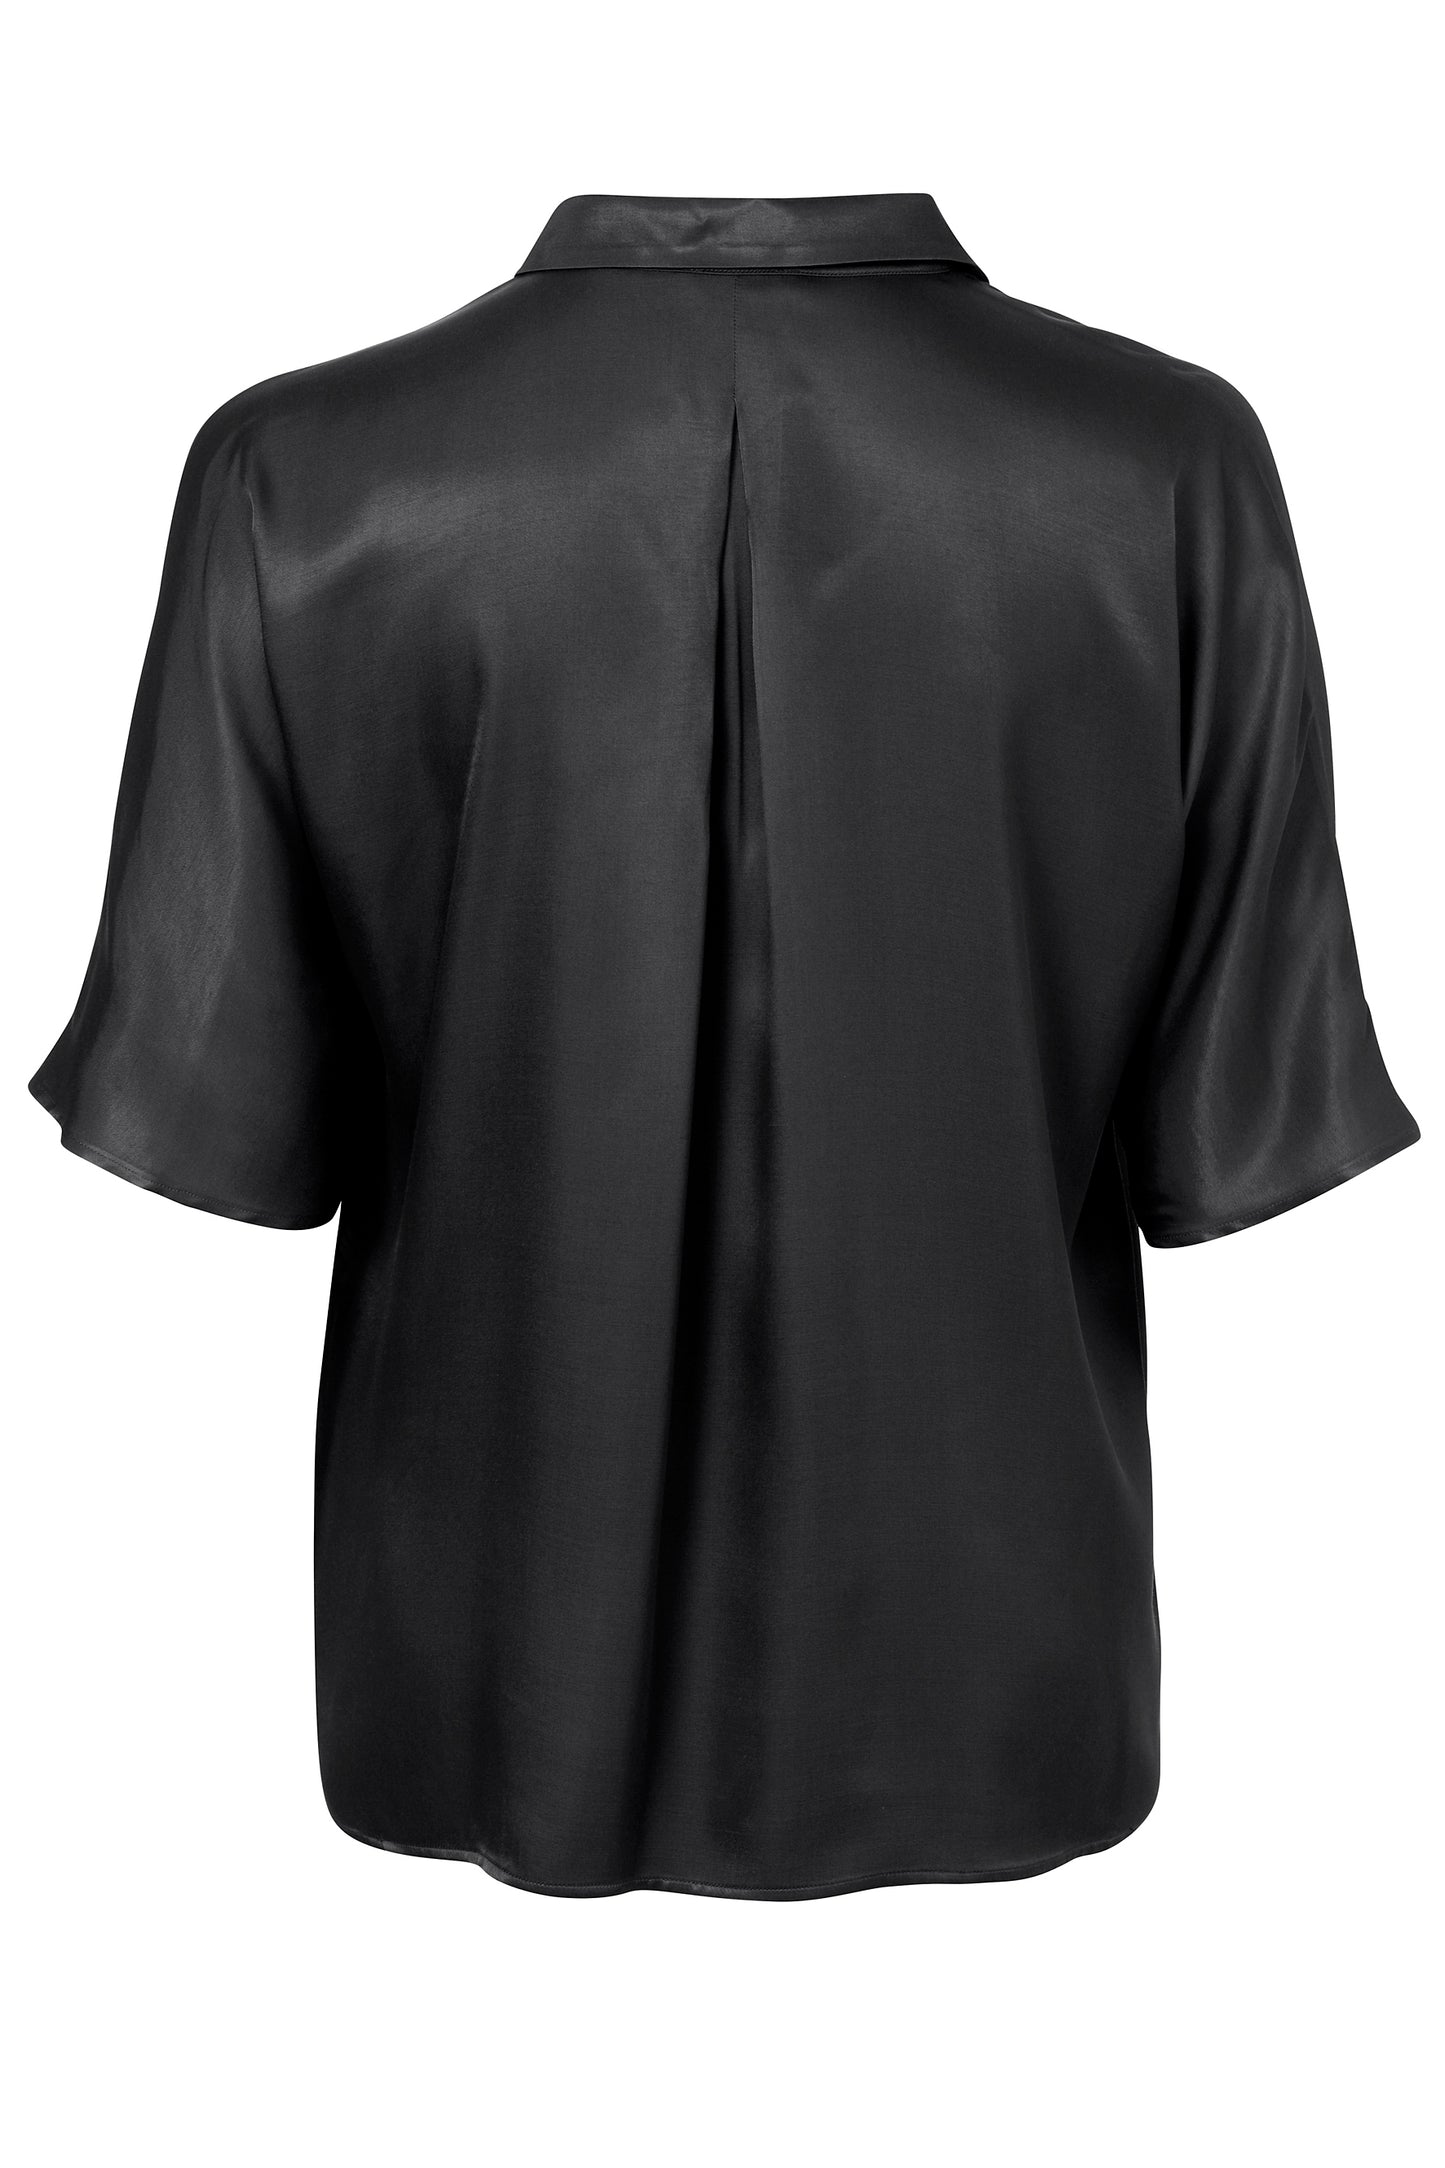 Bluse Hemdkragen 1/2 Arm  überschnittene Schulter